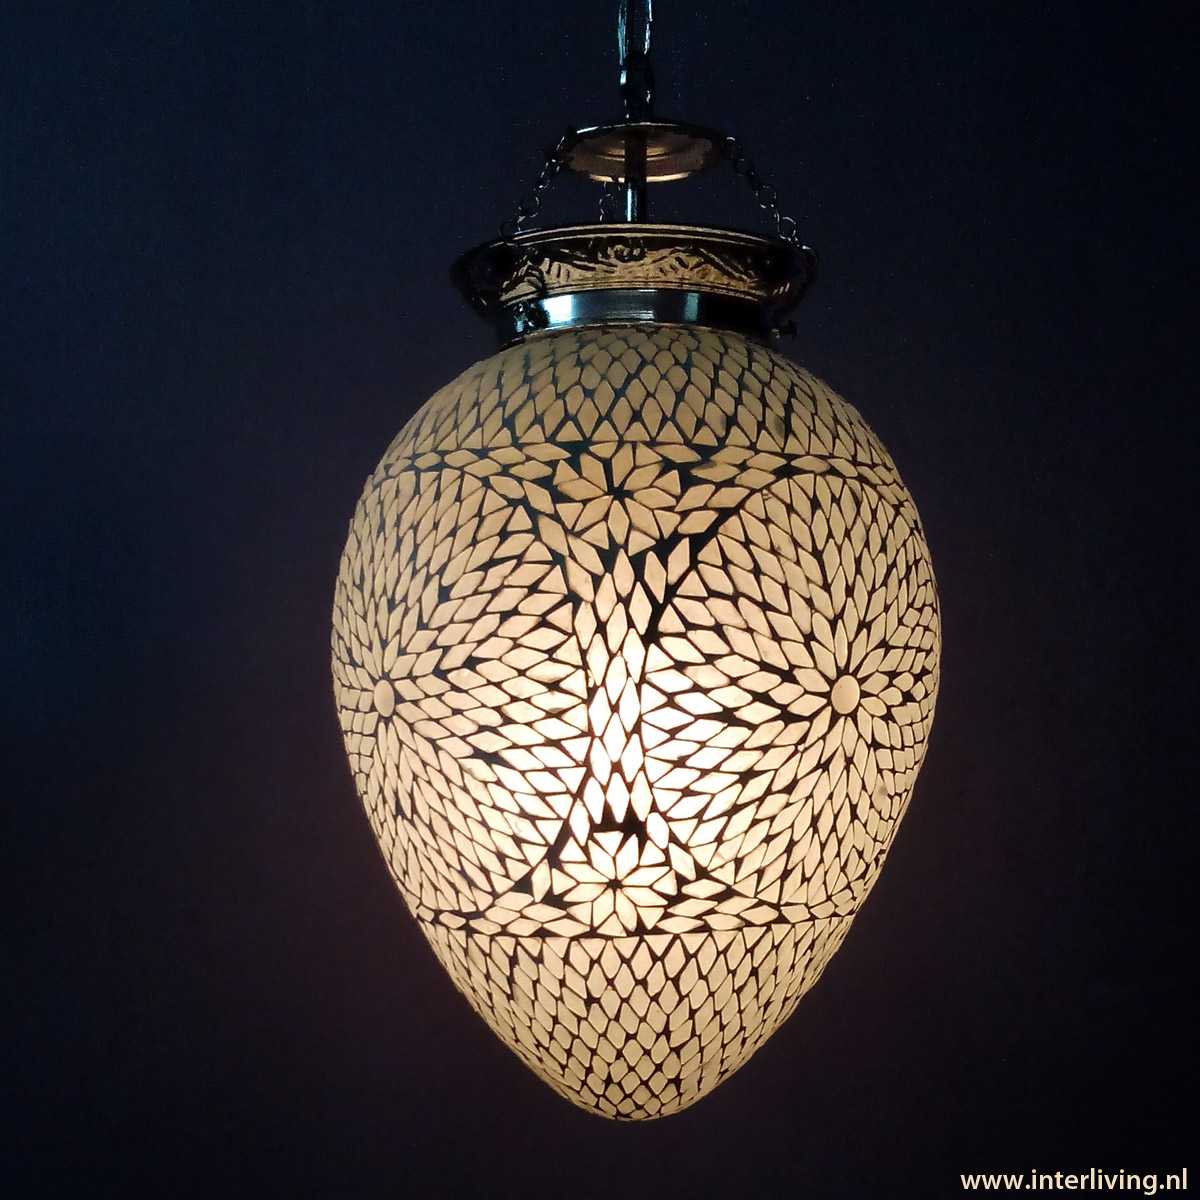 Voorganger eer Bovenstaande ei vormige hanglamp van glasmozaiek in oosterse art deco stijl